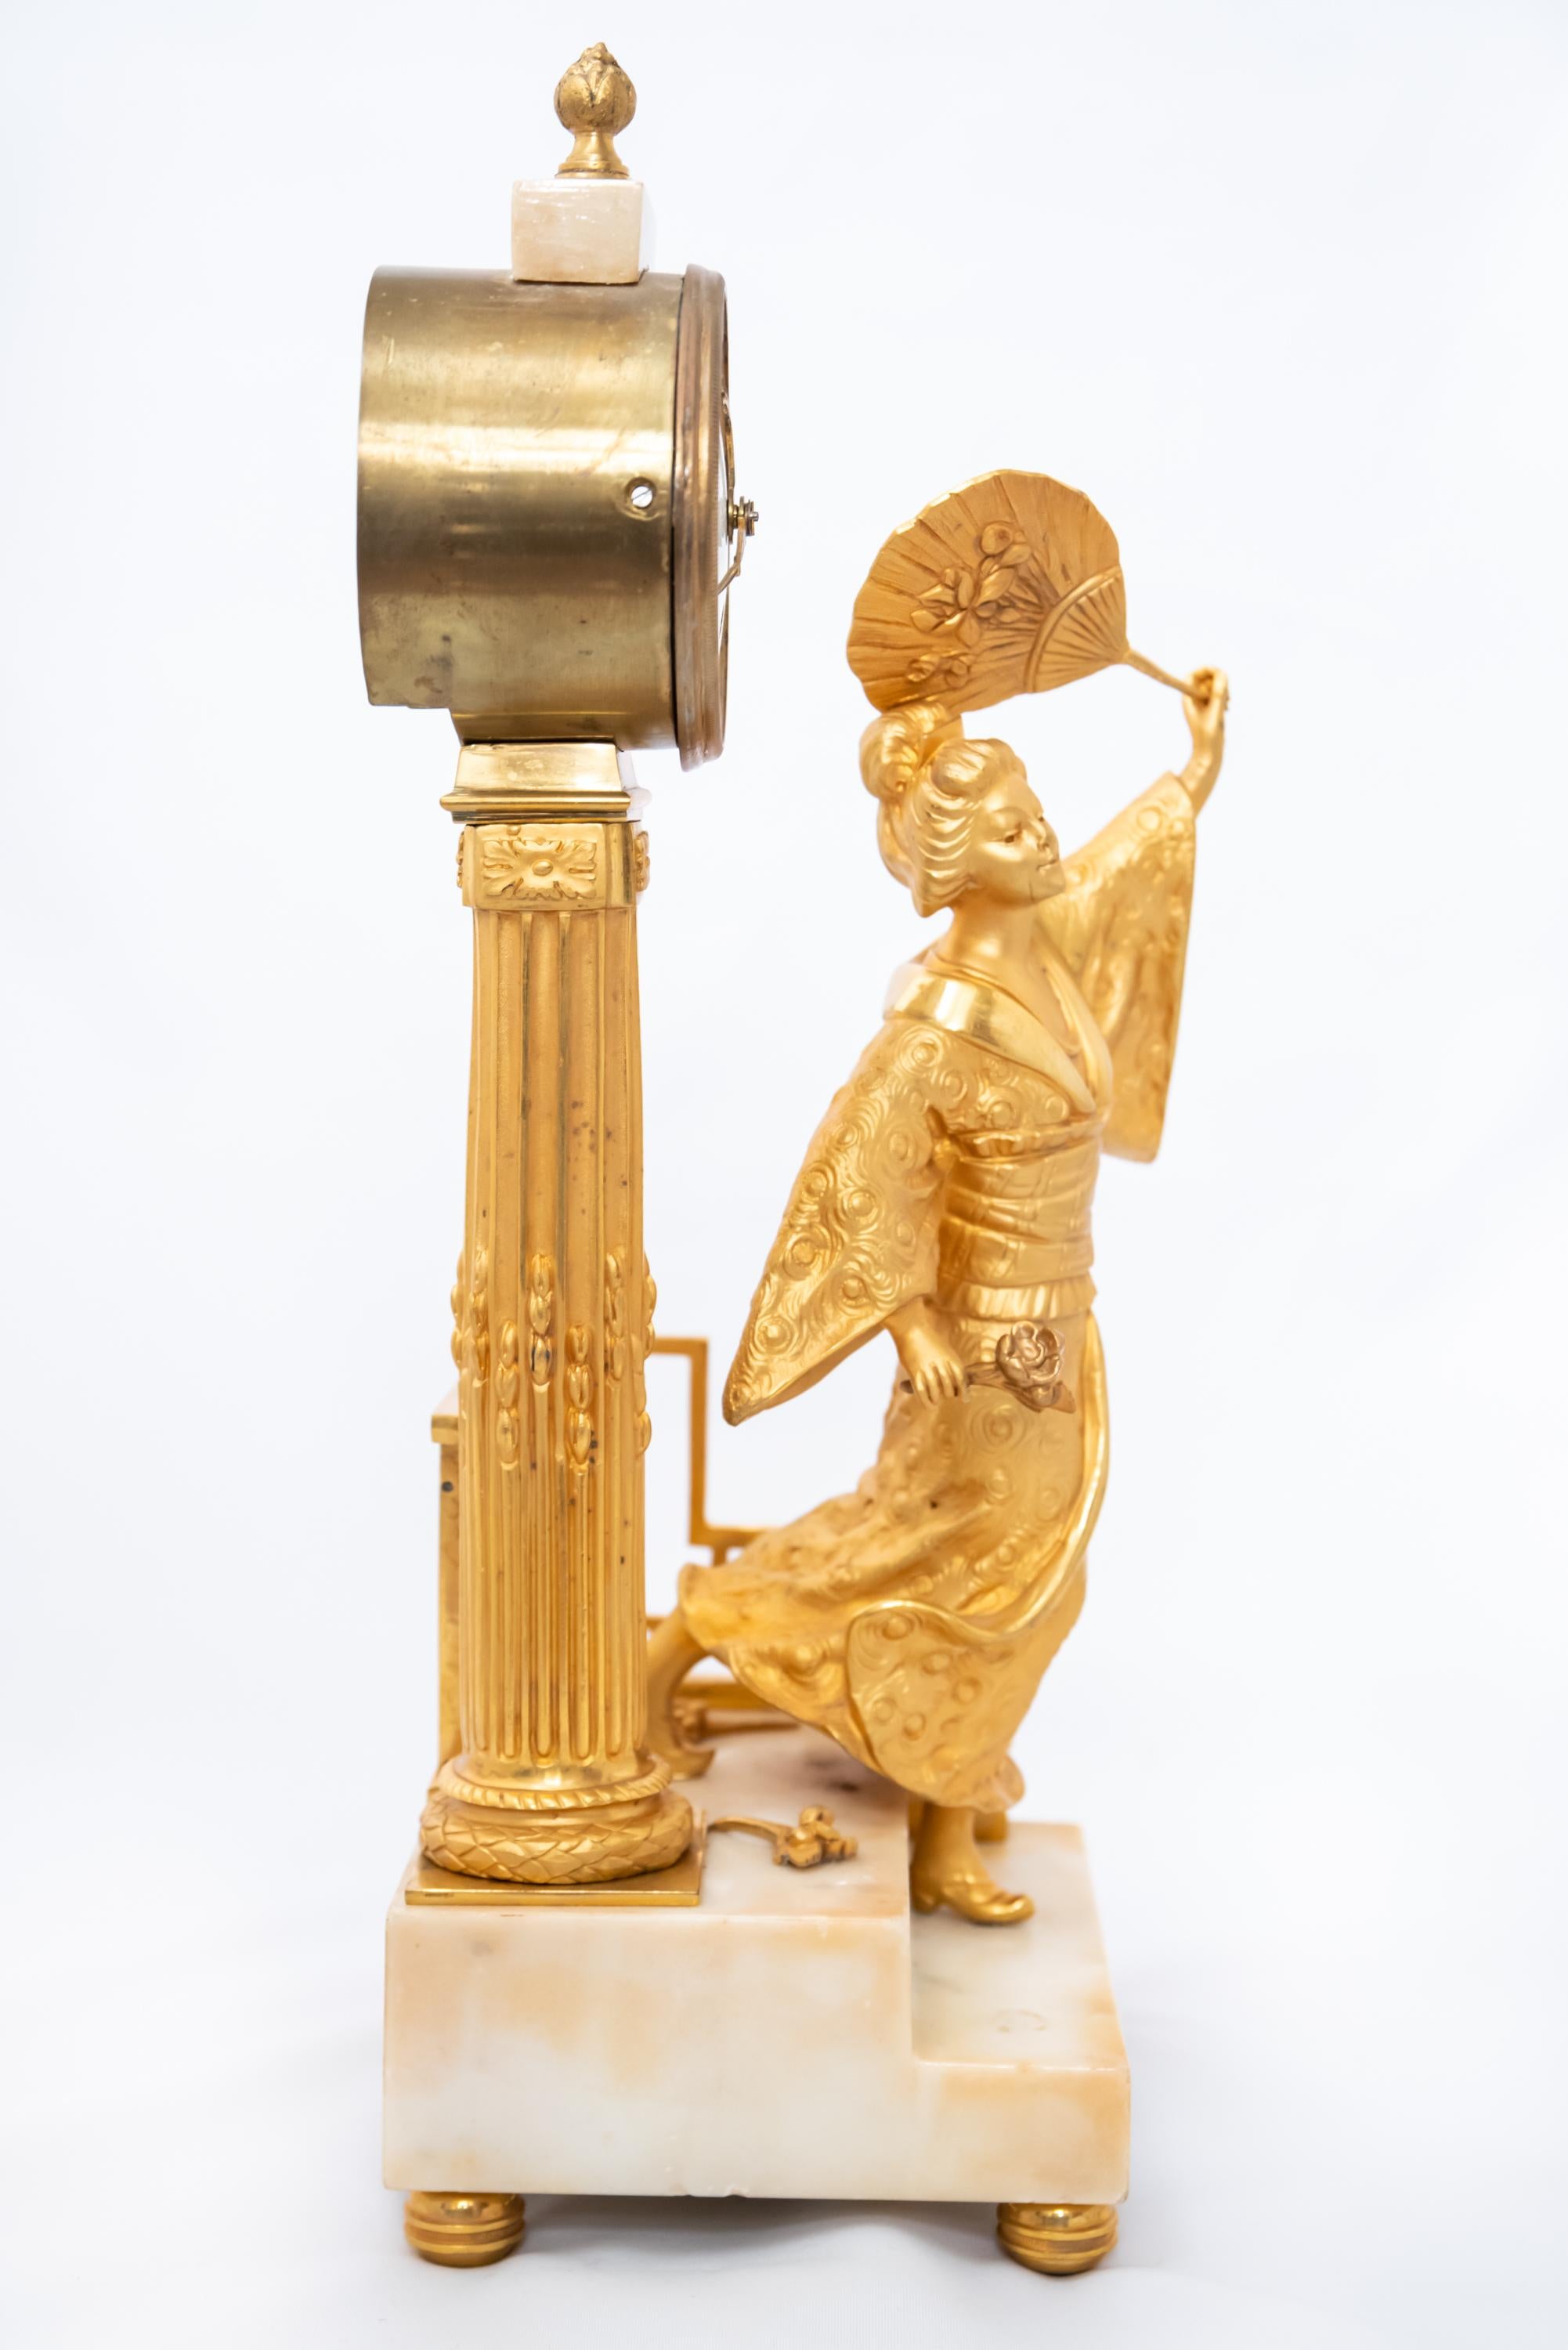 Pendule française en bronze doré au feu avec base en marbre représentant une femme japonaise, époque Louis XVI ou Empire, 1790-1815. Le mécanisme à fil de soie est en bon état de fonctionnement avec la clé et le pendule.